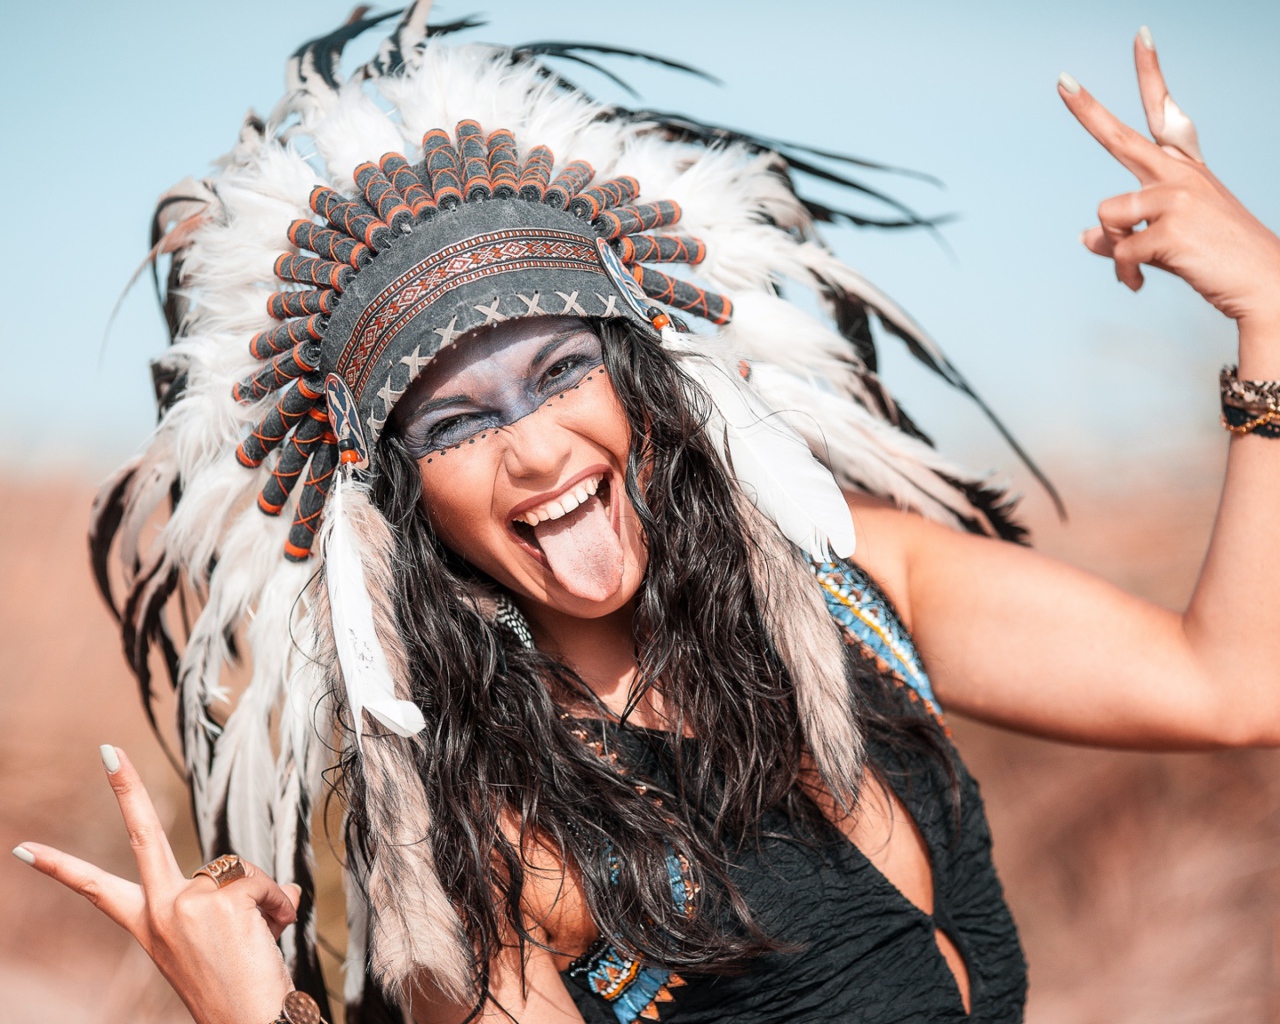 Веселая девушка с высунутым языком в костюме индейца